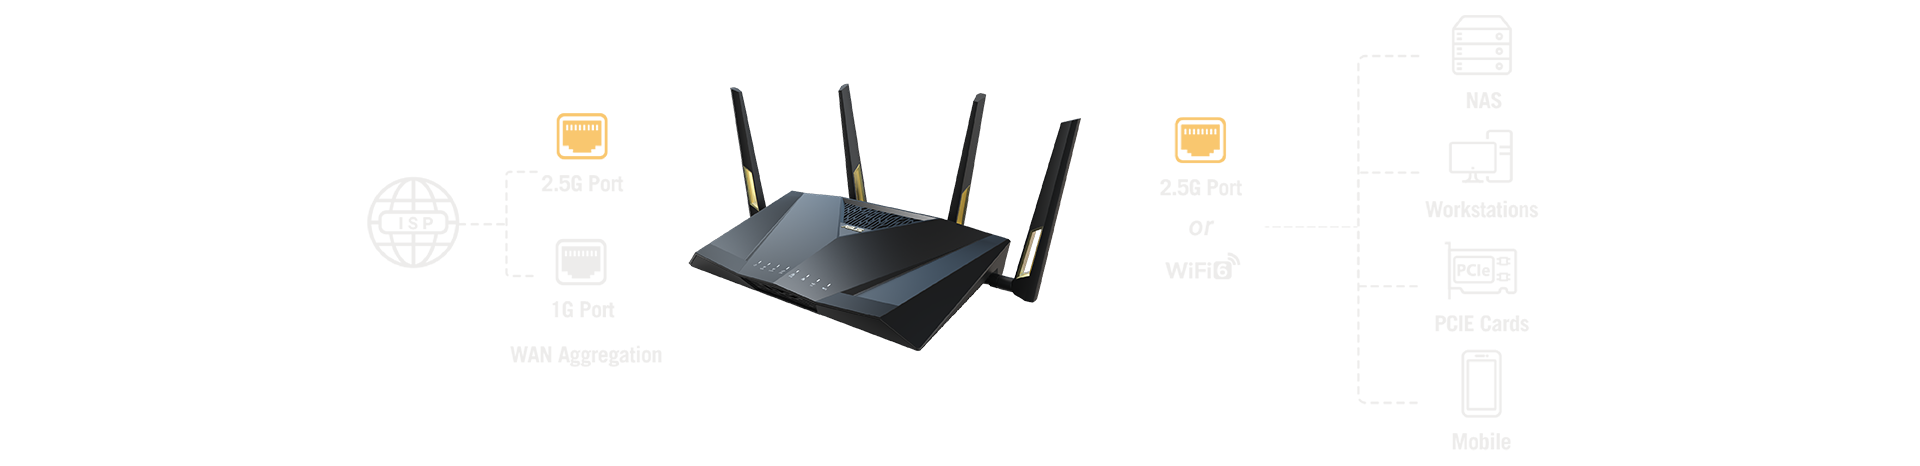 L'agrégation WAN vous permet de combiner un port 2,5 Gbit/s et un port 1 Gbit/s pour atteindre jusqu'à 3,5 Gbit/s de bande passante WAN, ce qui est suffisamment rapide pour les FAI à ultra-haut débit les plus récents.